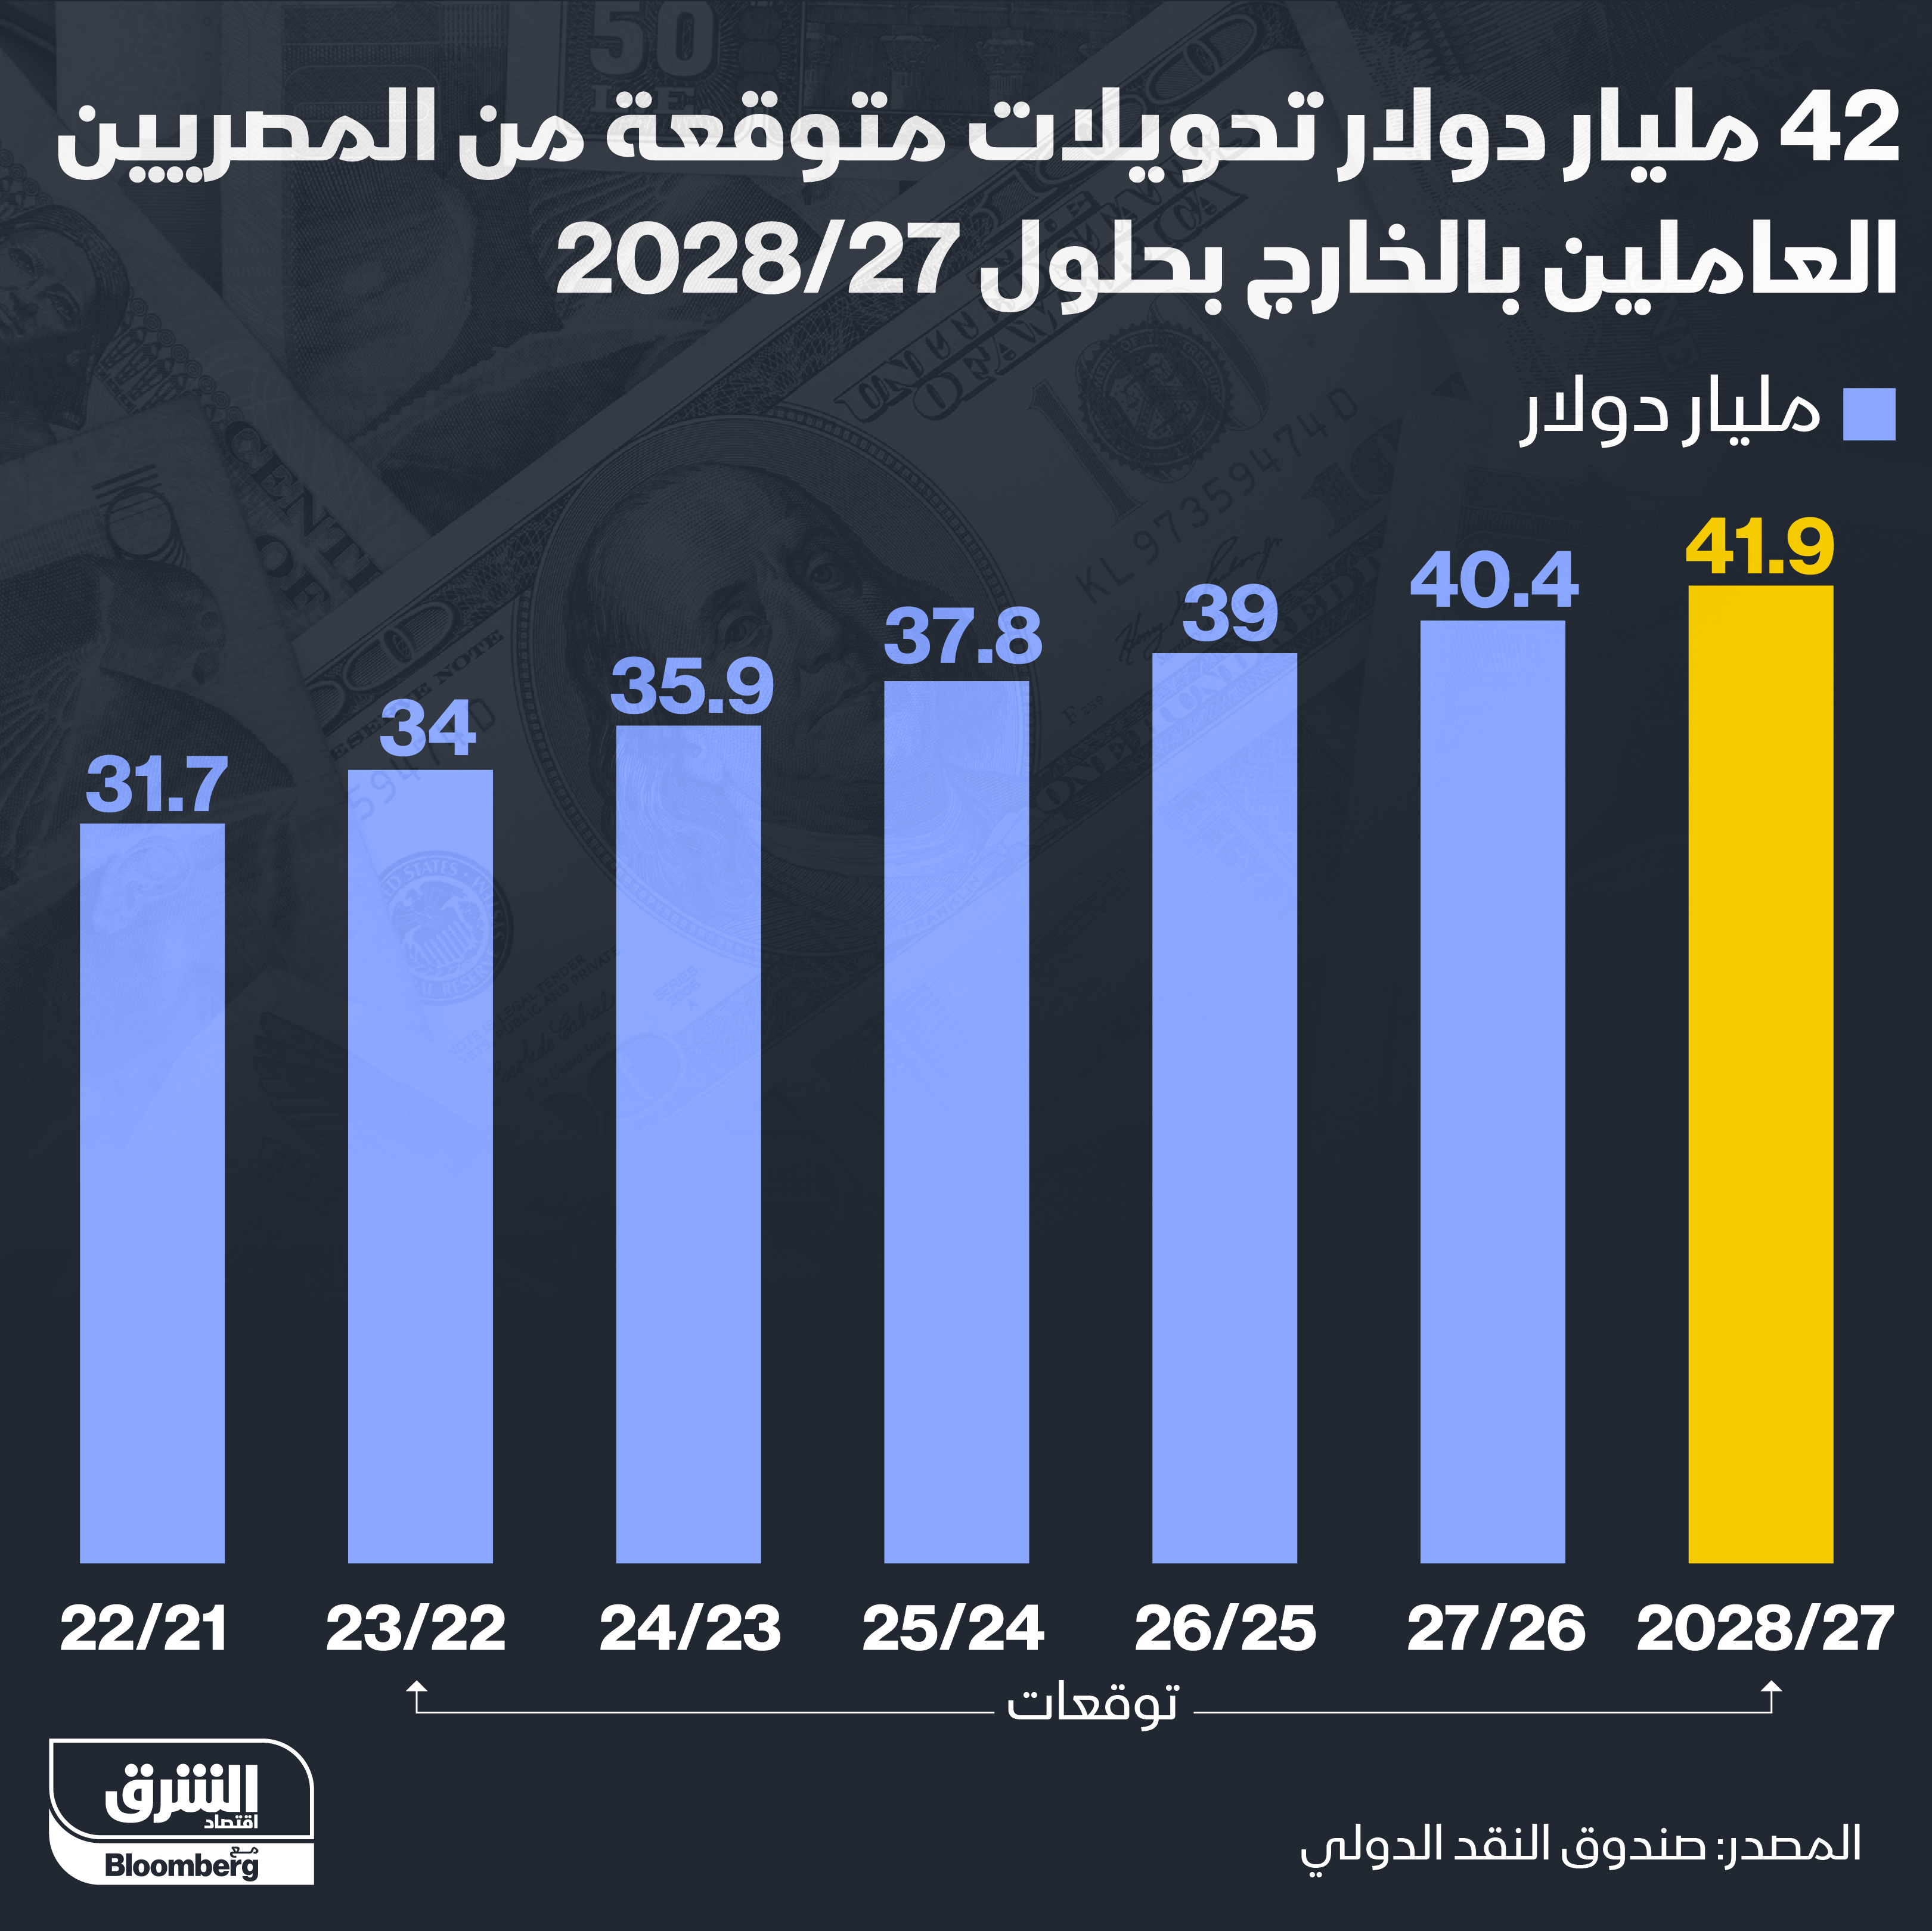 تحويلات المغتربين المصريين المتوقعة لعام 2027